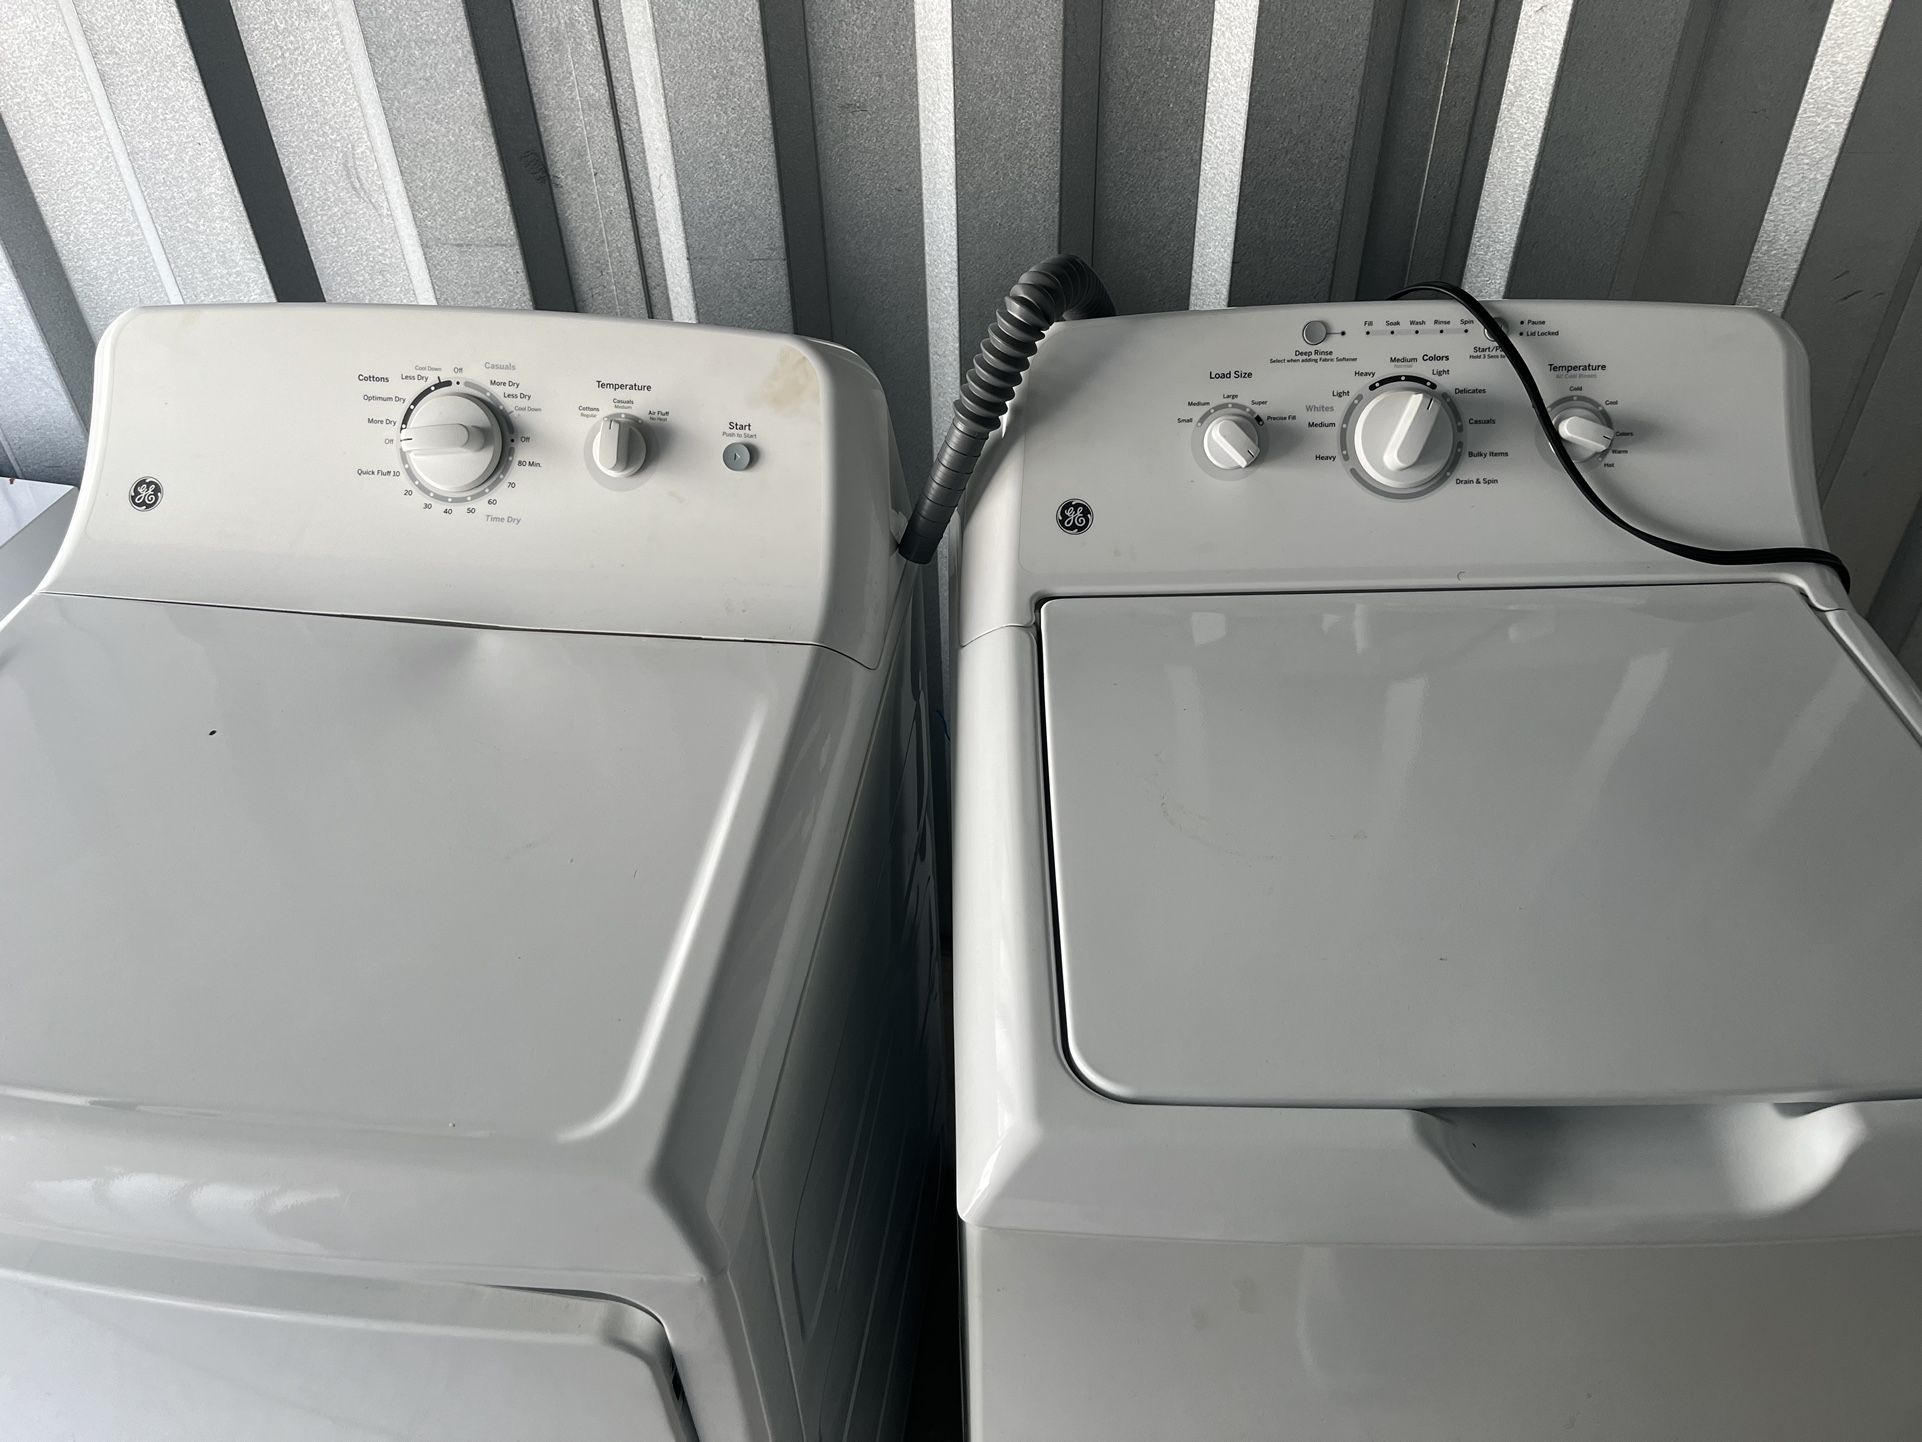 Washing machine and dryer set